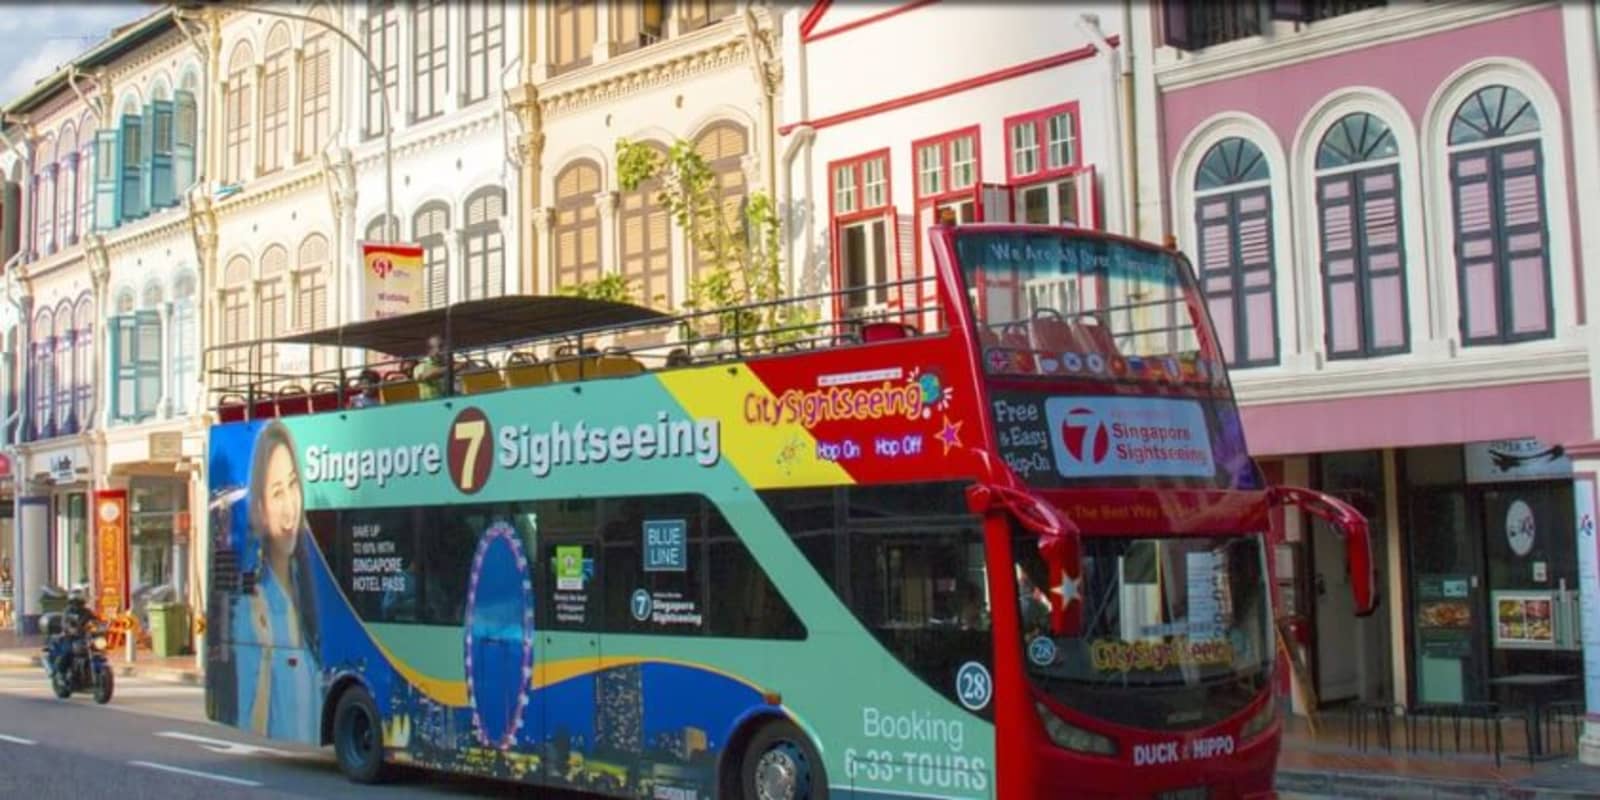 Singapore Hop on Hop off Bus Tours